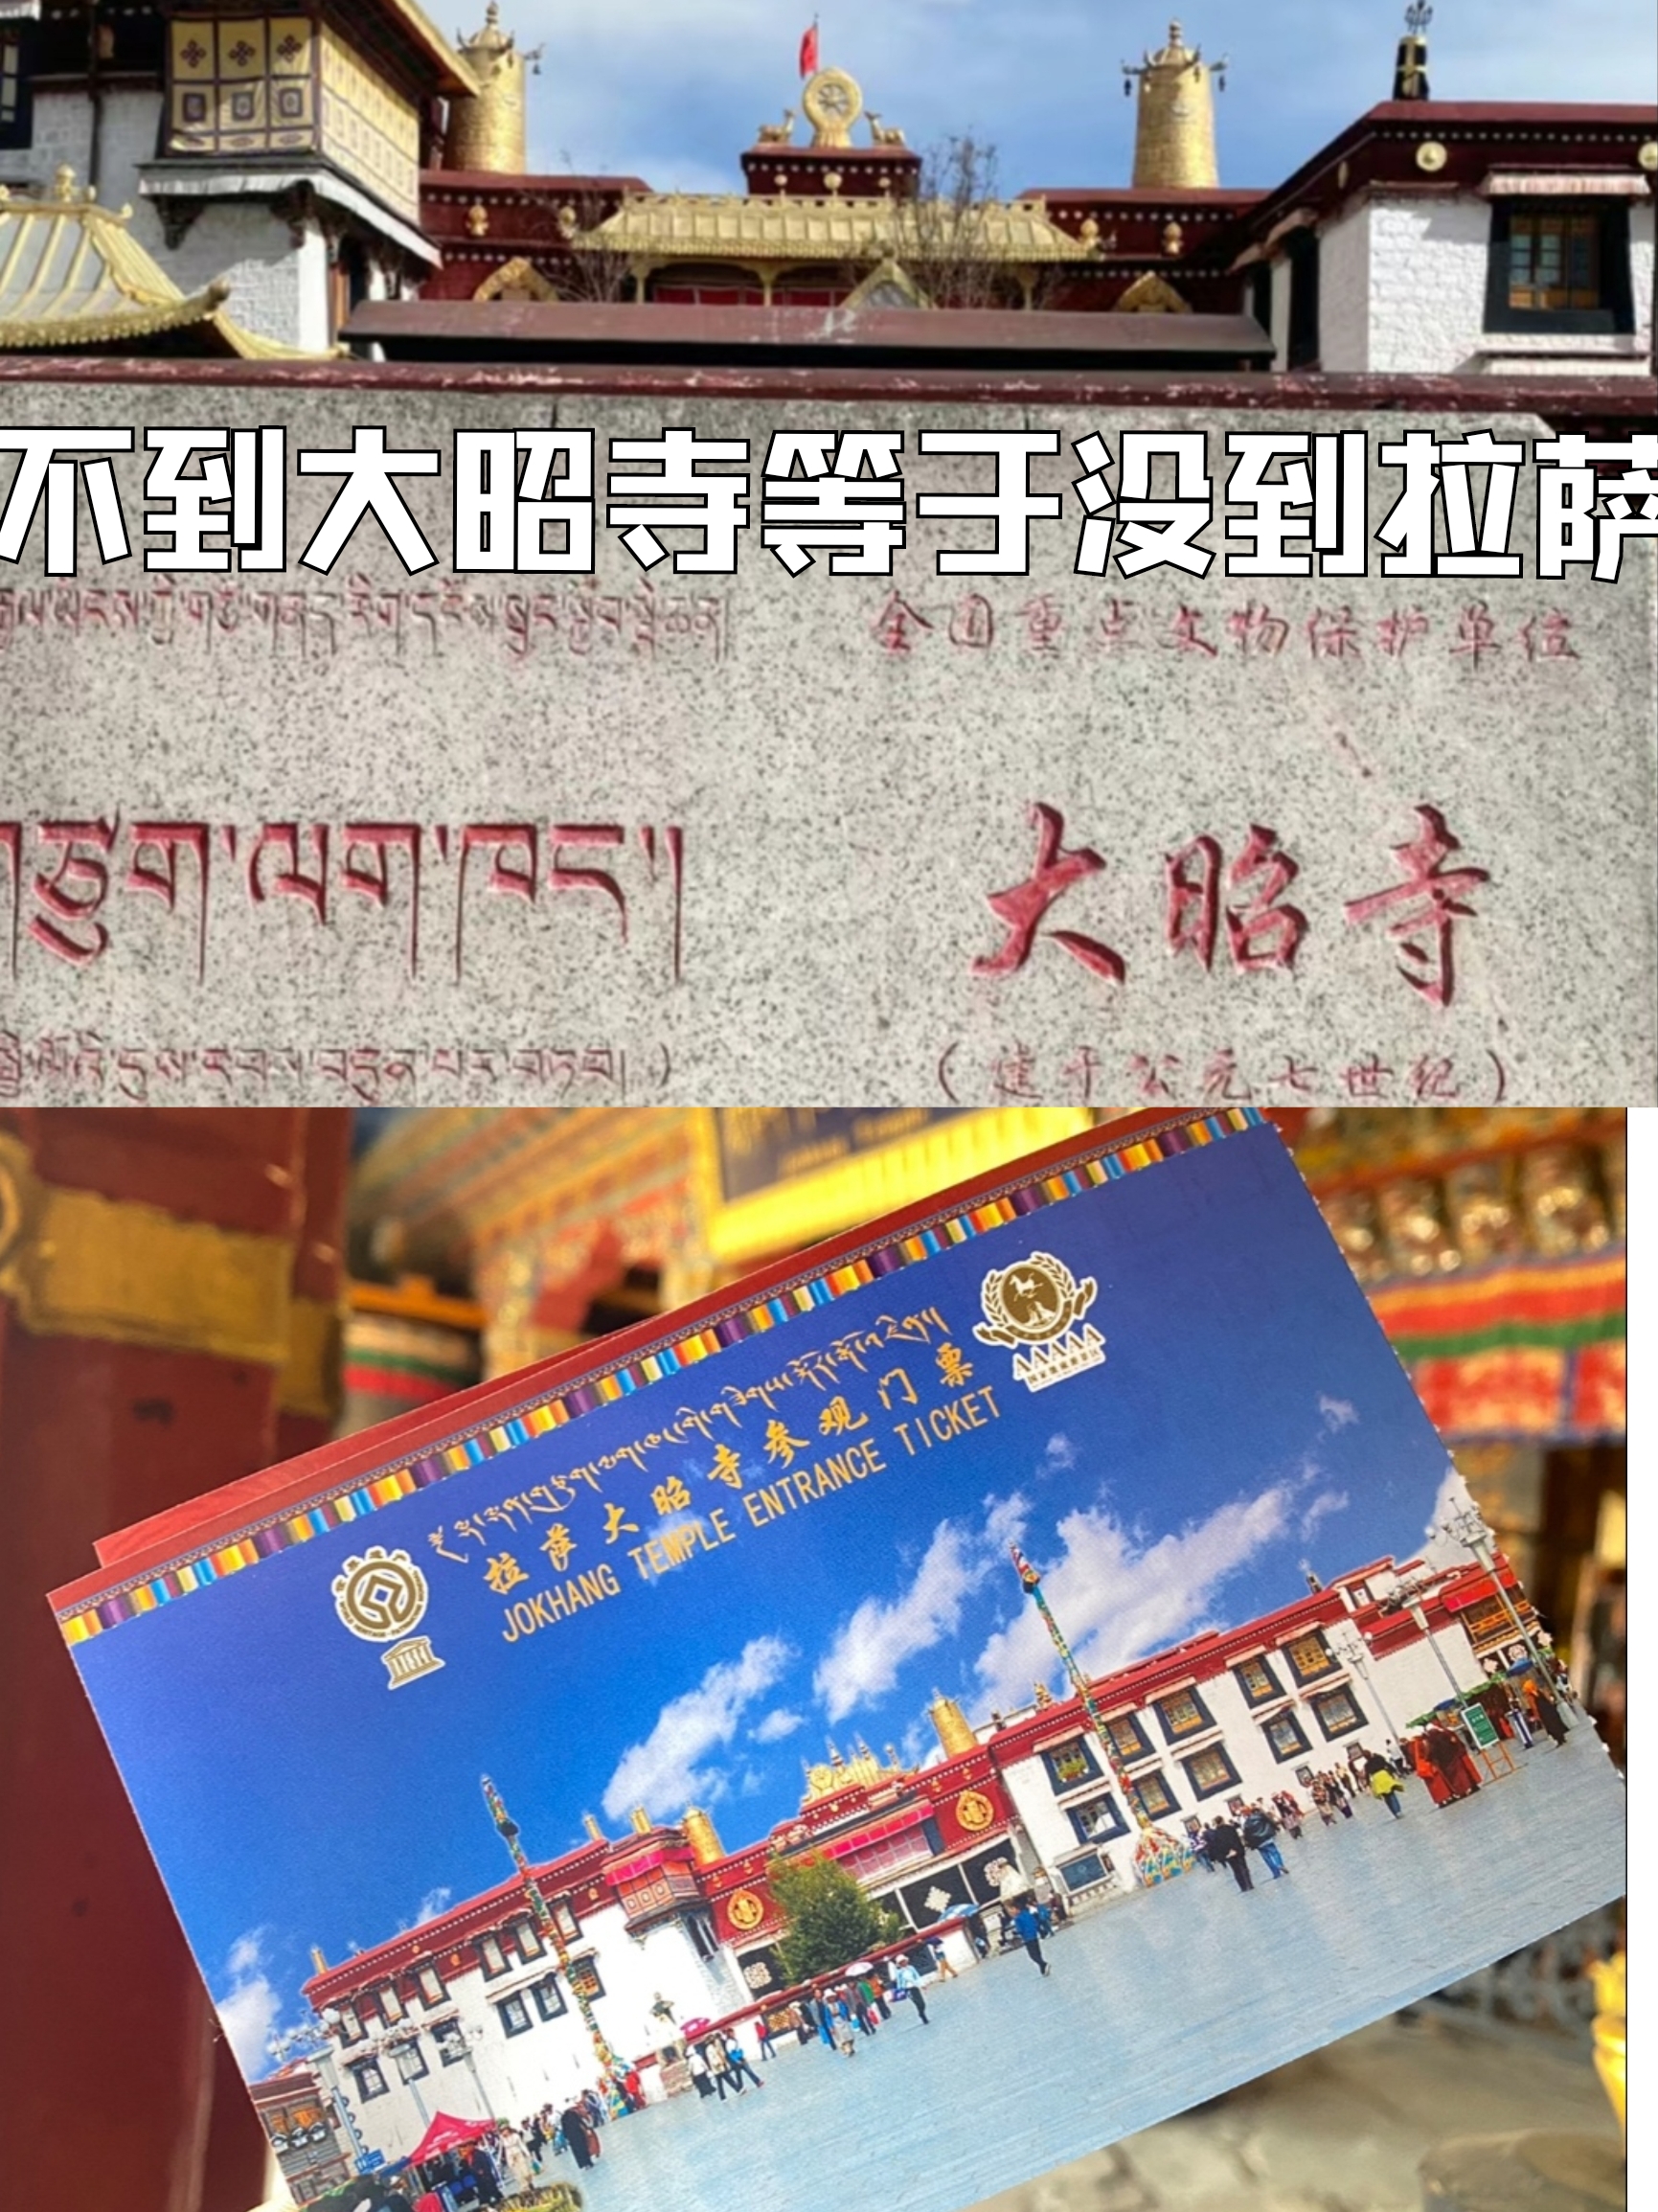 藏传佛教的中心–大昭寺
。